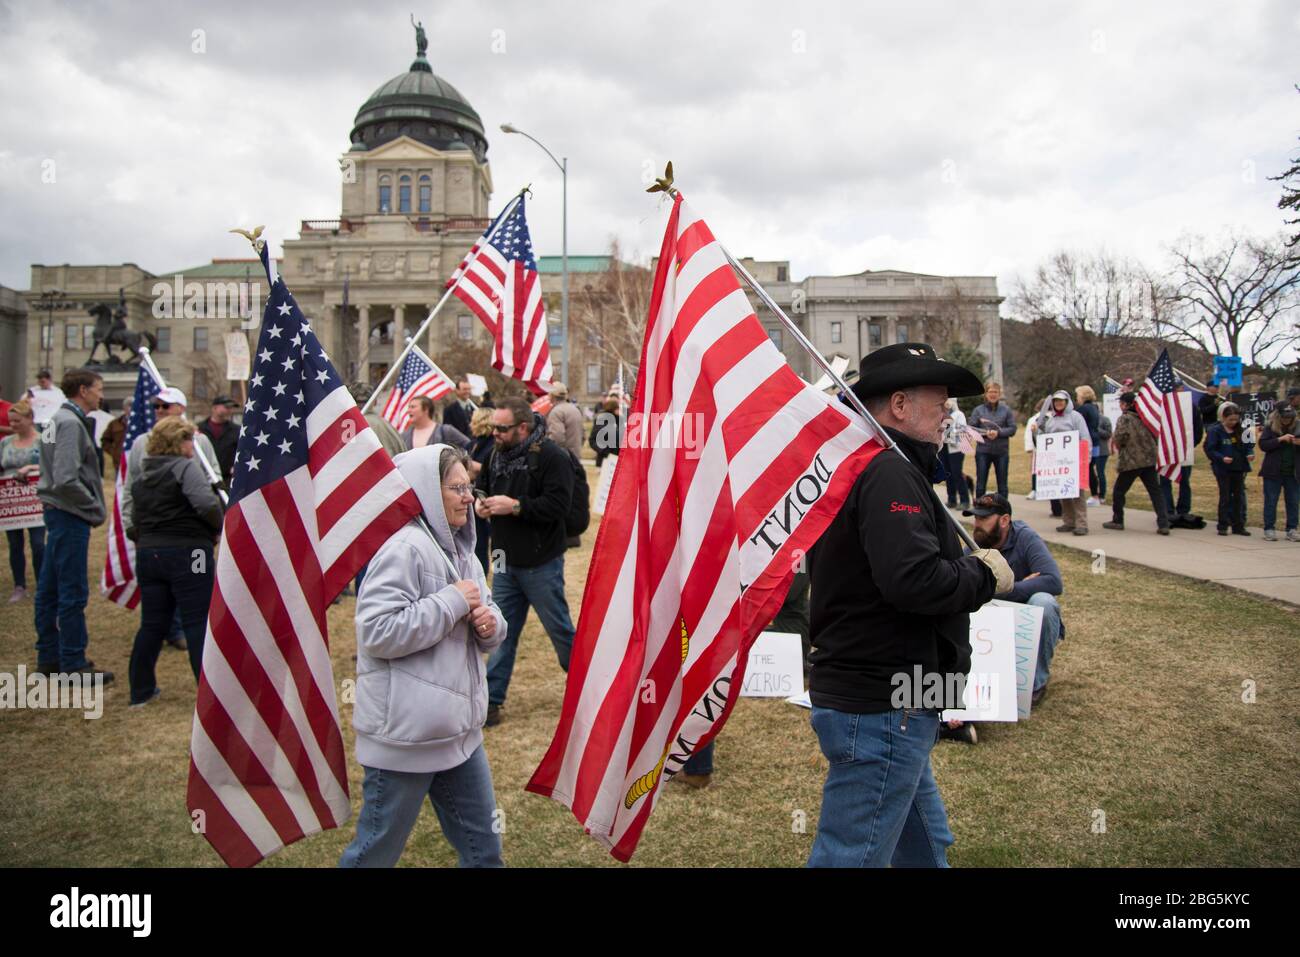 Helena, Montana - 19. April 2020: Protestierende, ein Mann und eine Frau, die amerikanische Flaggen halten, marschieren bei einem Protest gegen die Schließung der Regierung. Stockfoto